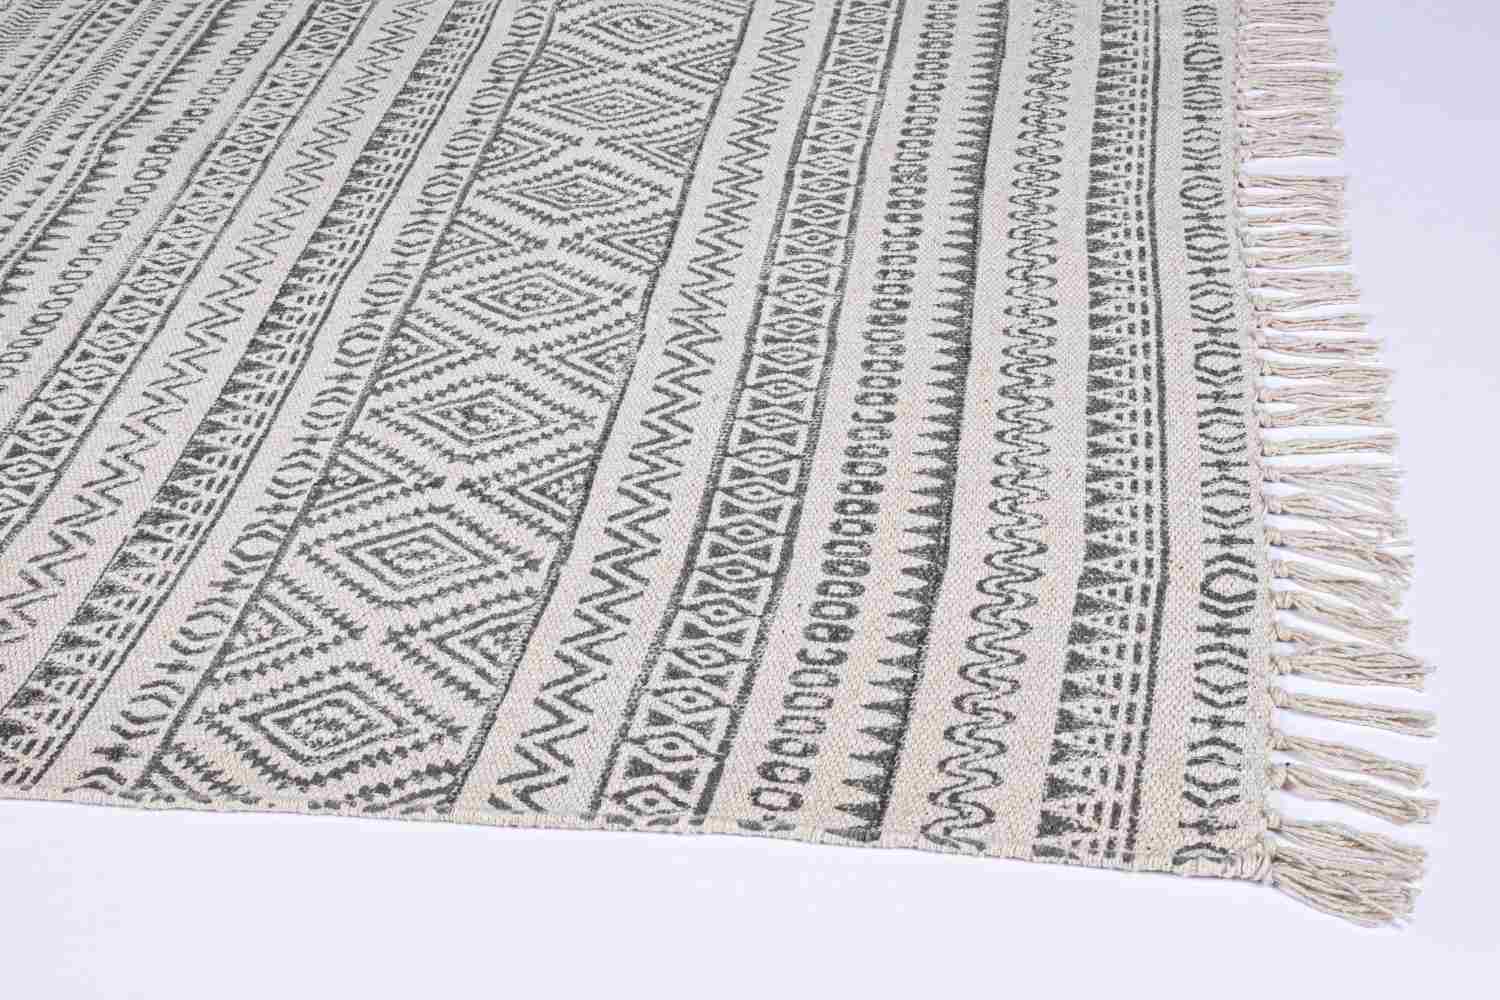 Der Teppich Giordania überzeugt mit seinem klassischen Design. Gefertigt wurde die Vorderseite aus 100% Baumwolle. Der Teppich besitzt einen grauen Farbton und die Maße von 140x200 cm.